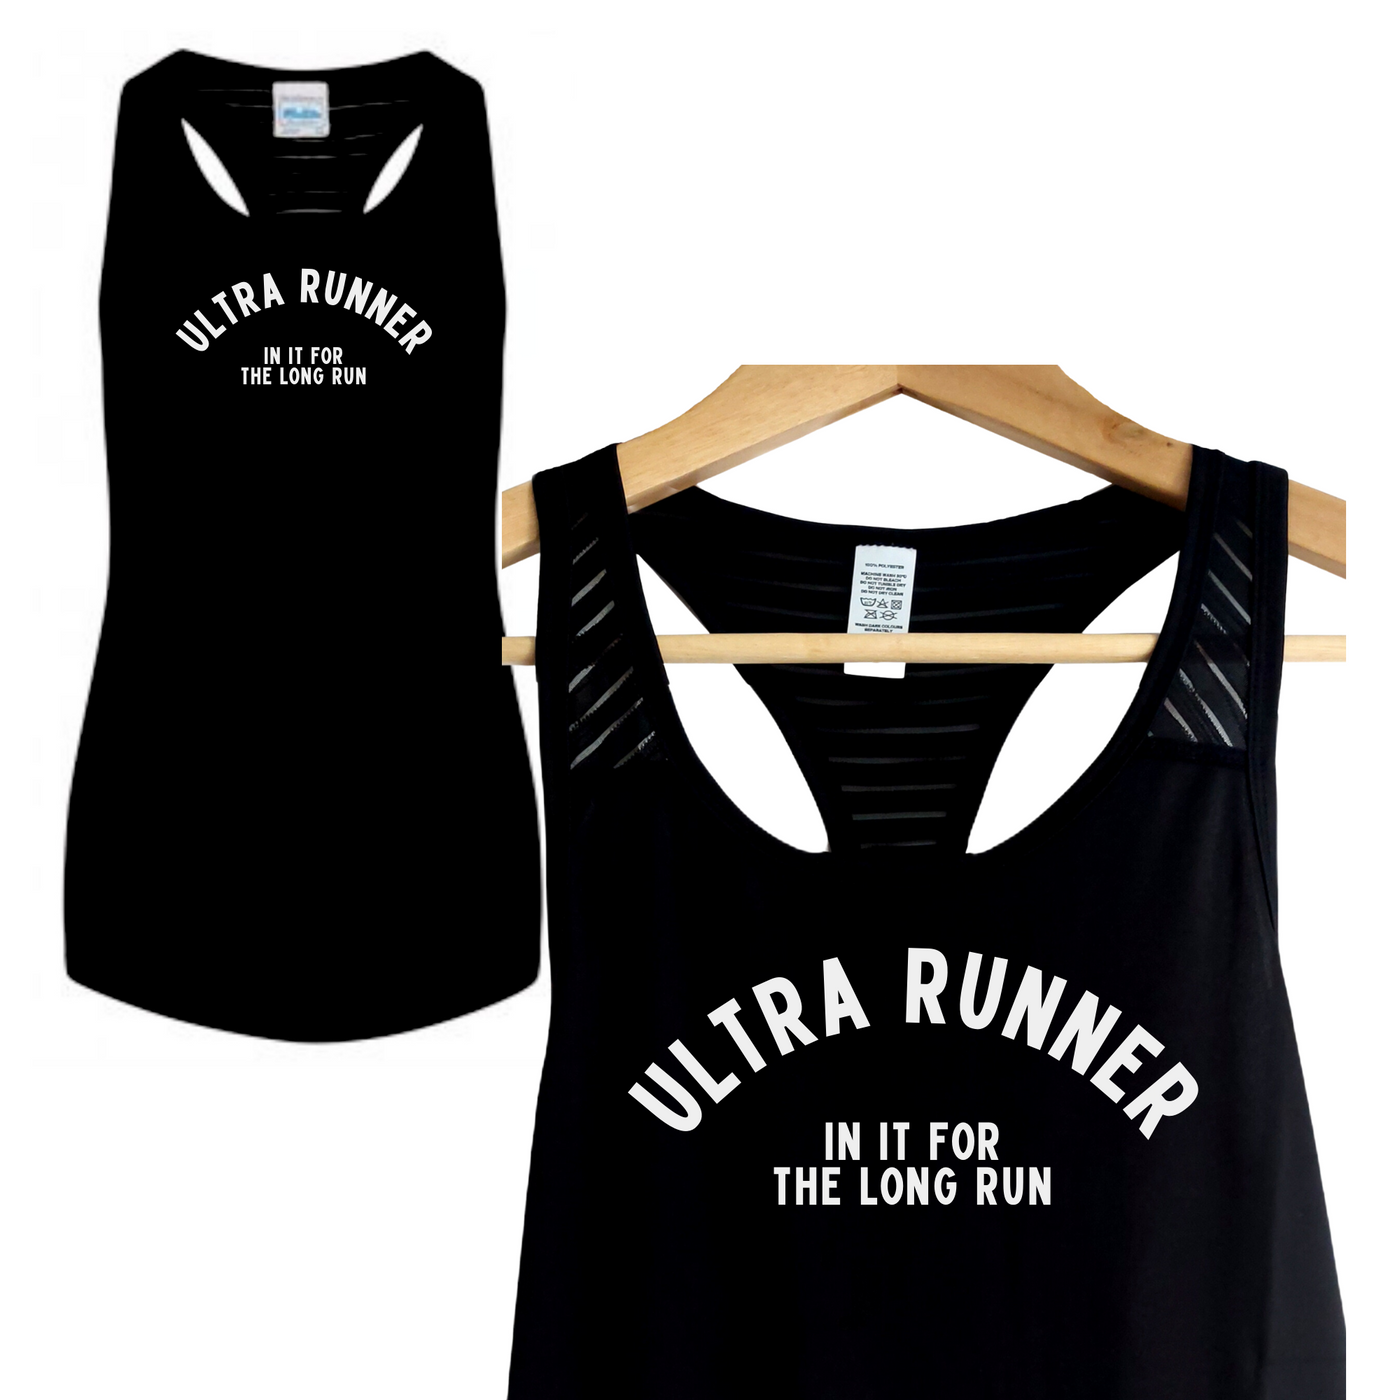 Ultra Runner - In it for the long run - Running Vest